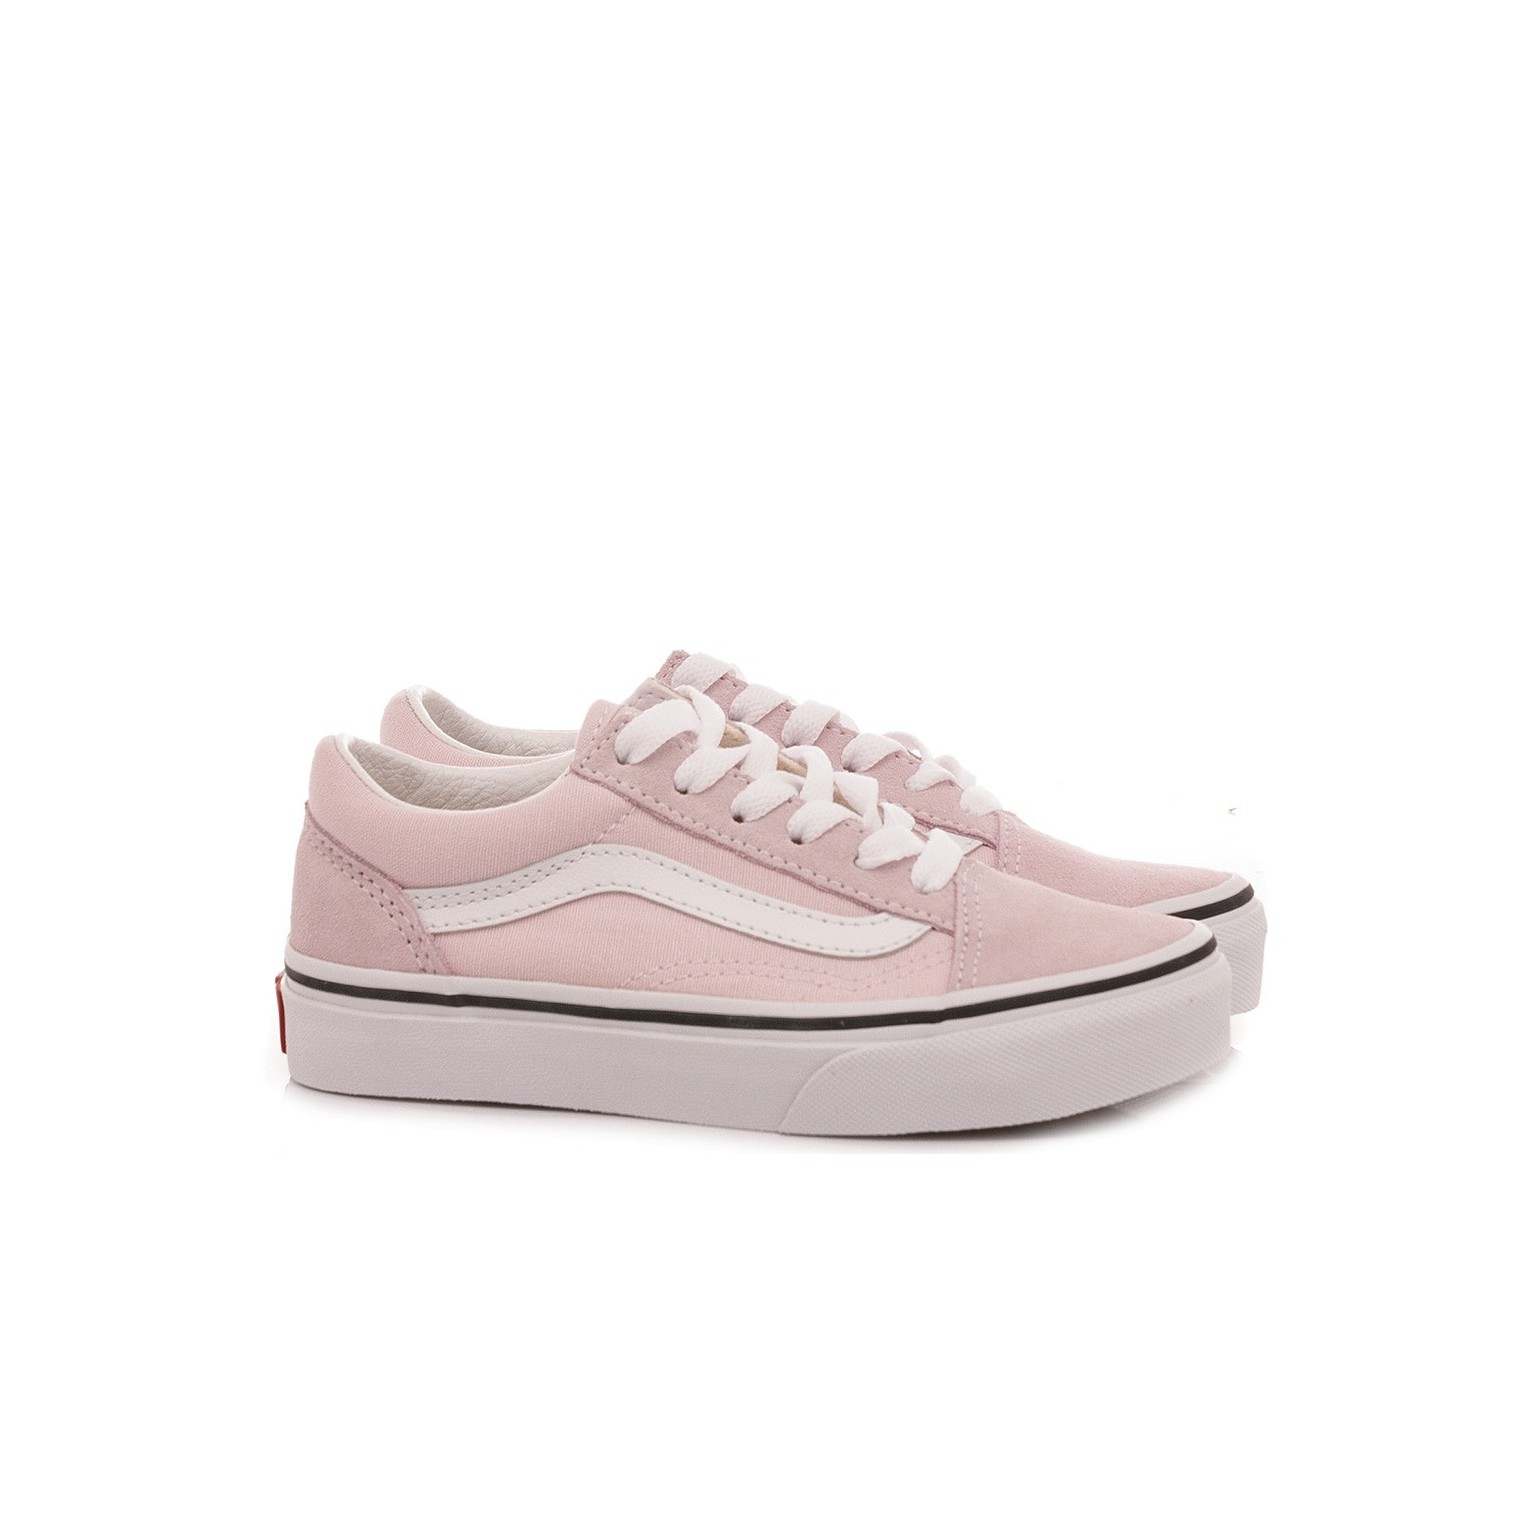 Vans Girl's Sneakers Old Skool Pink VN0A4BUUV3M1